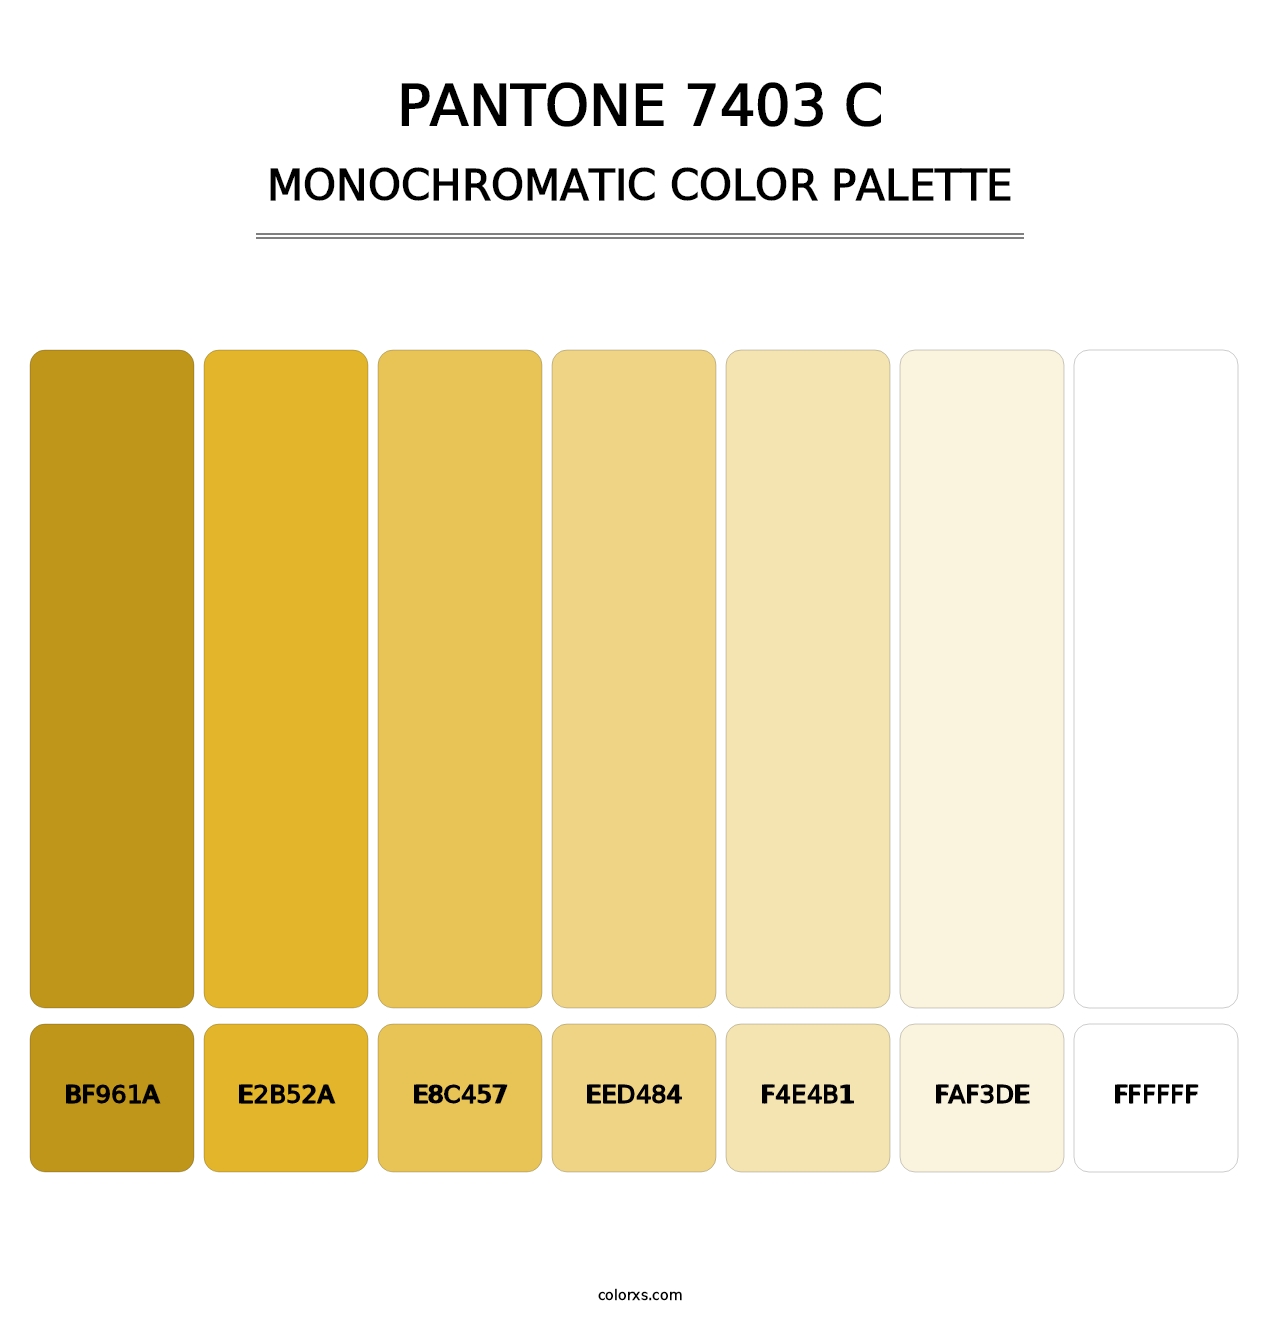 PANTONE 7403 C - Monochromatic Color Palette